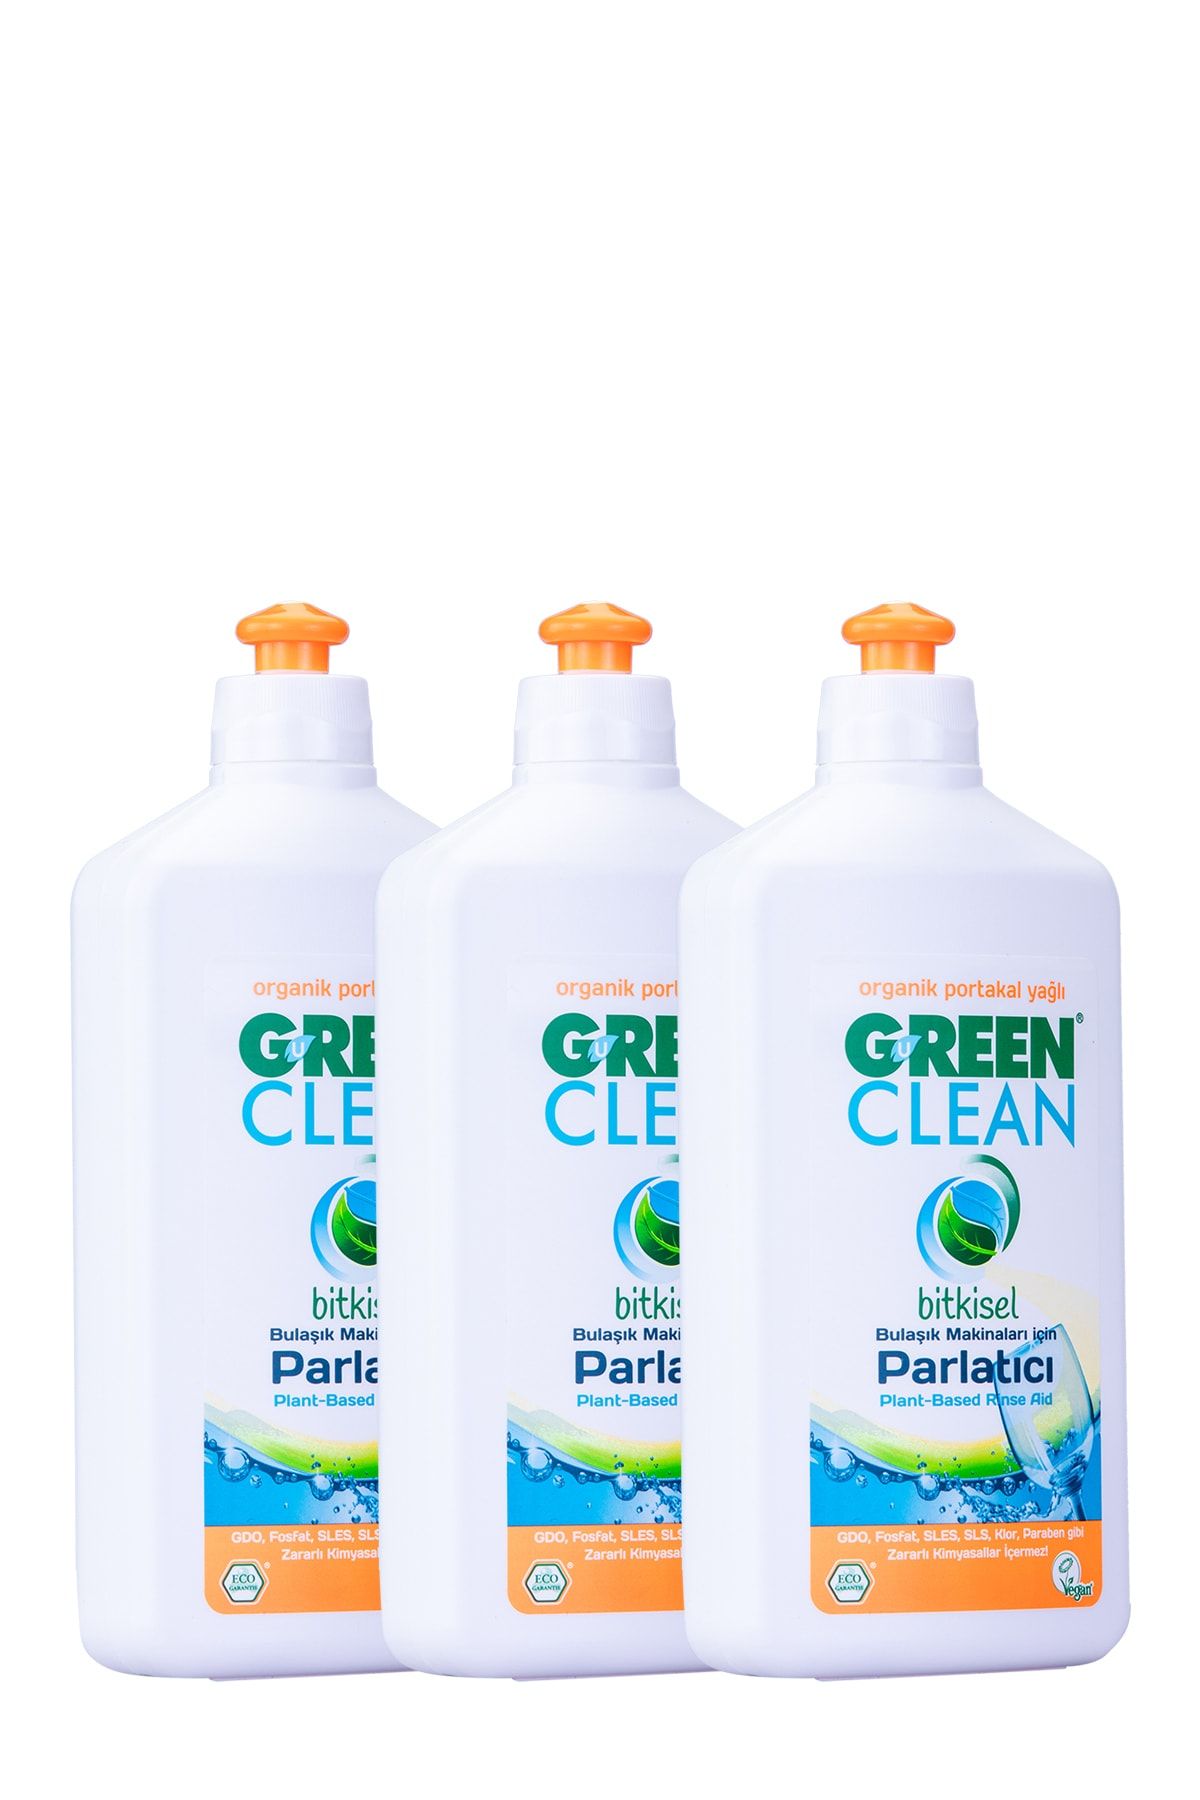 Green Clean Organik Portakal Yağlı Bulaşık Makinesi Parlatıcı 500 ml 3'lü Set